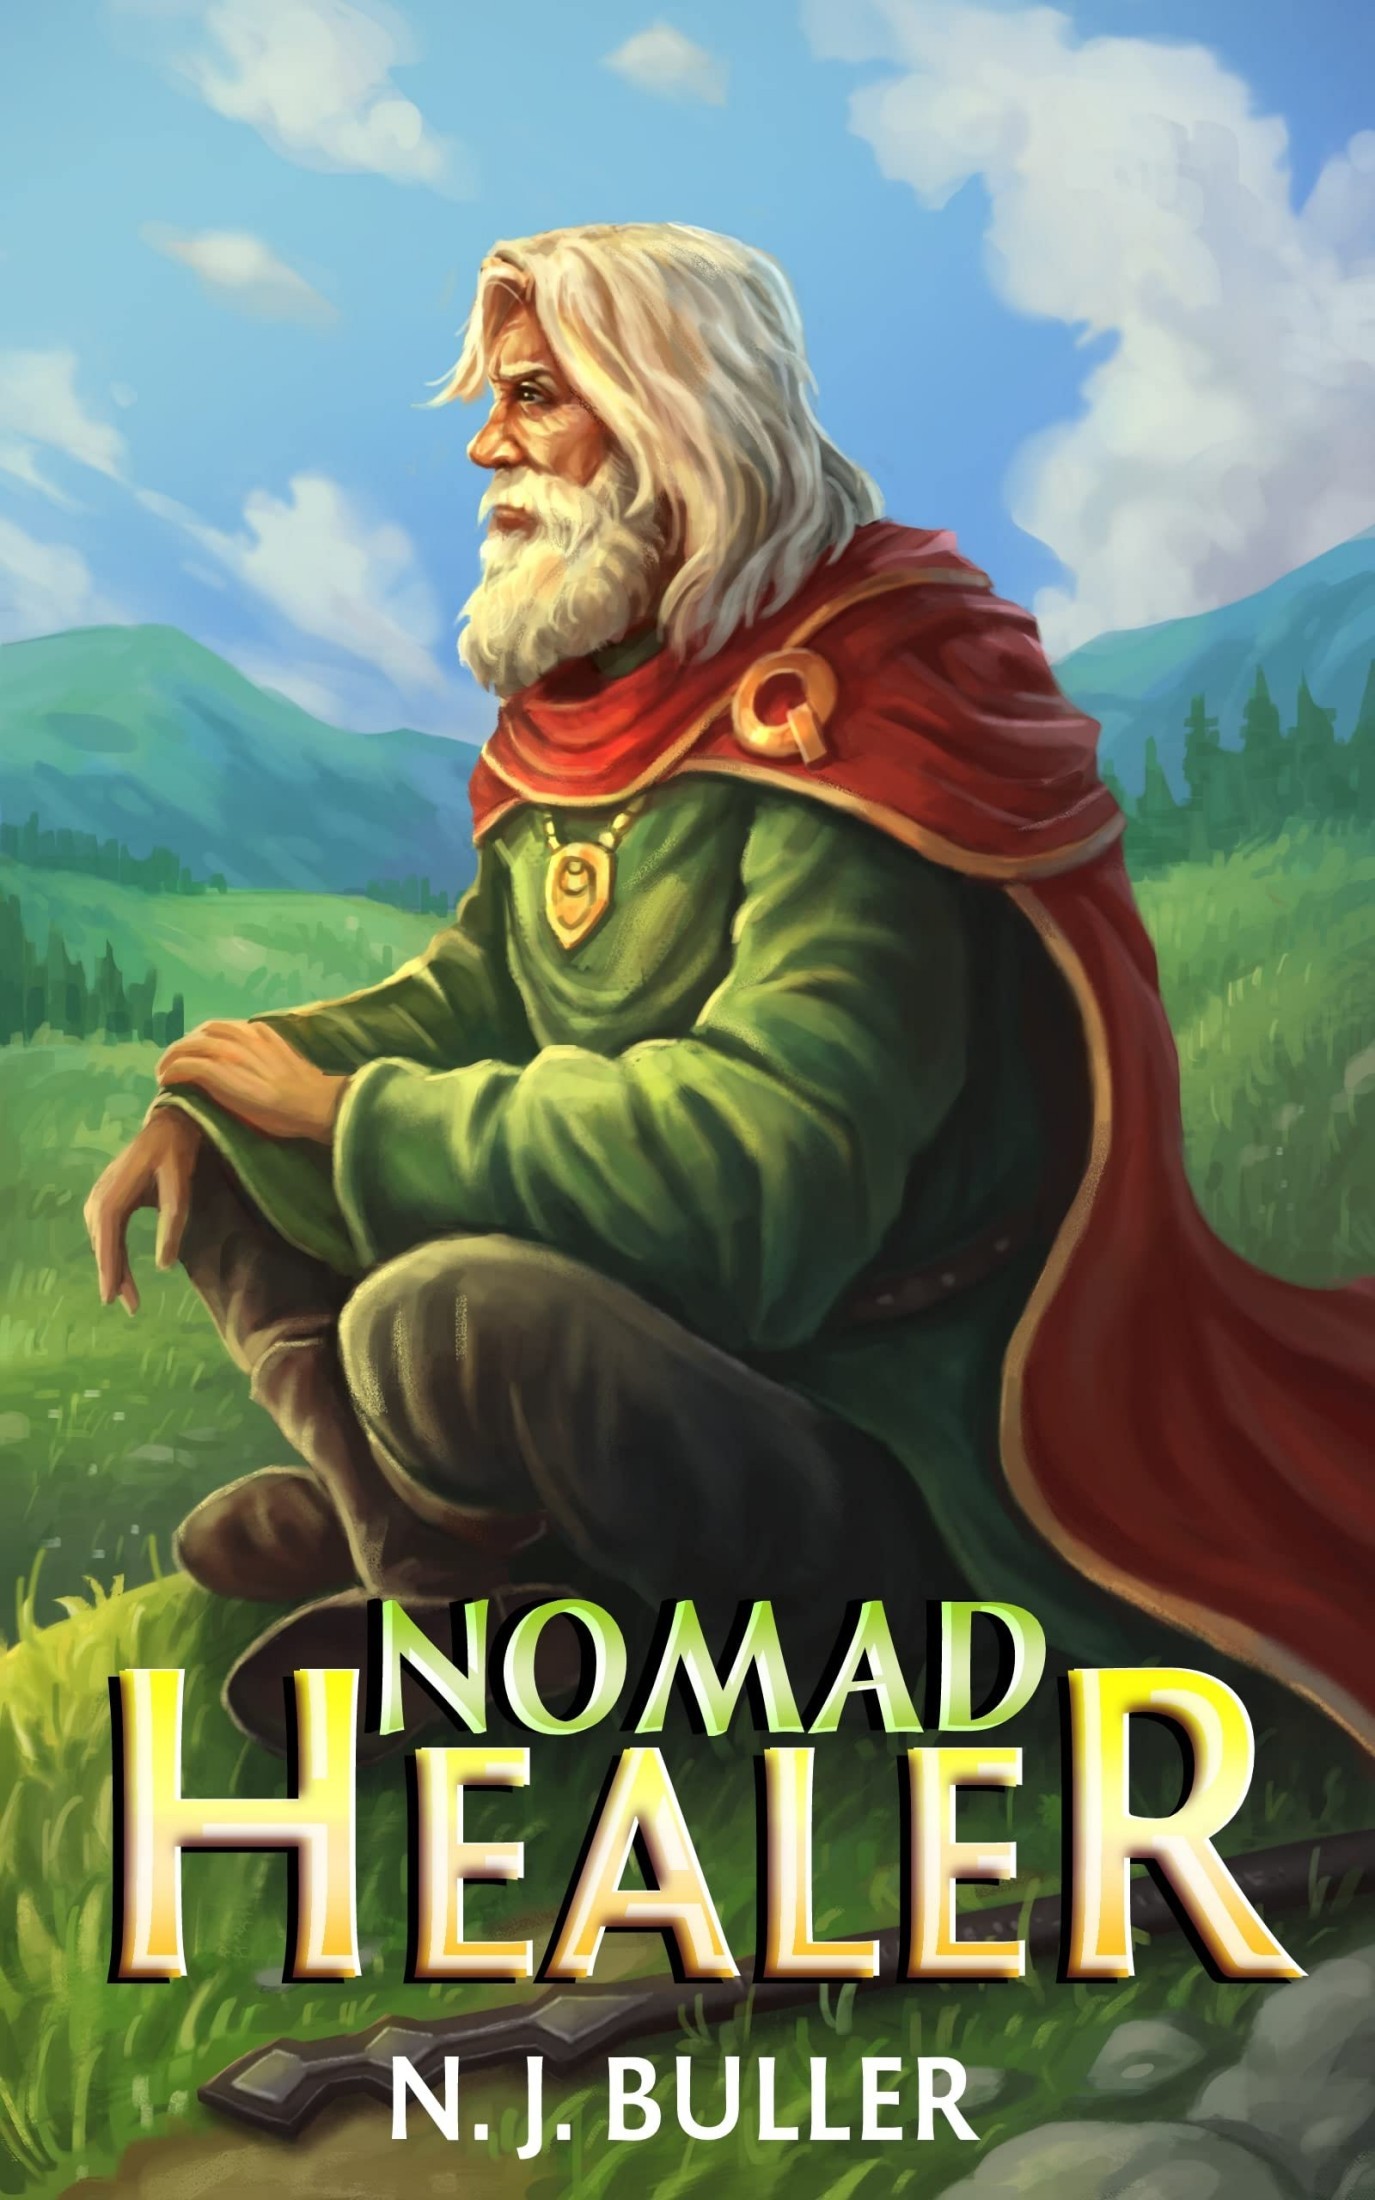 Nomad Healer #1